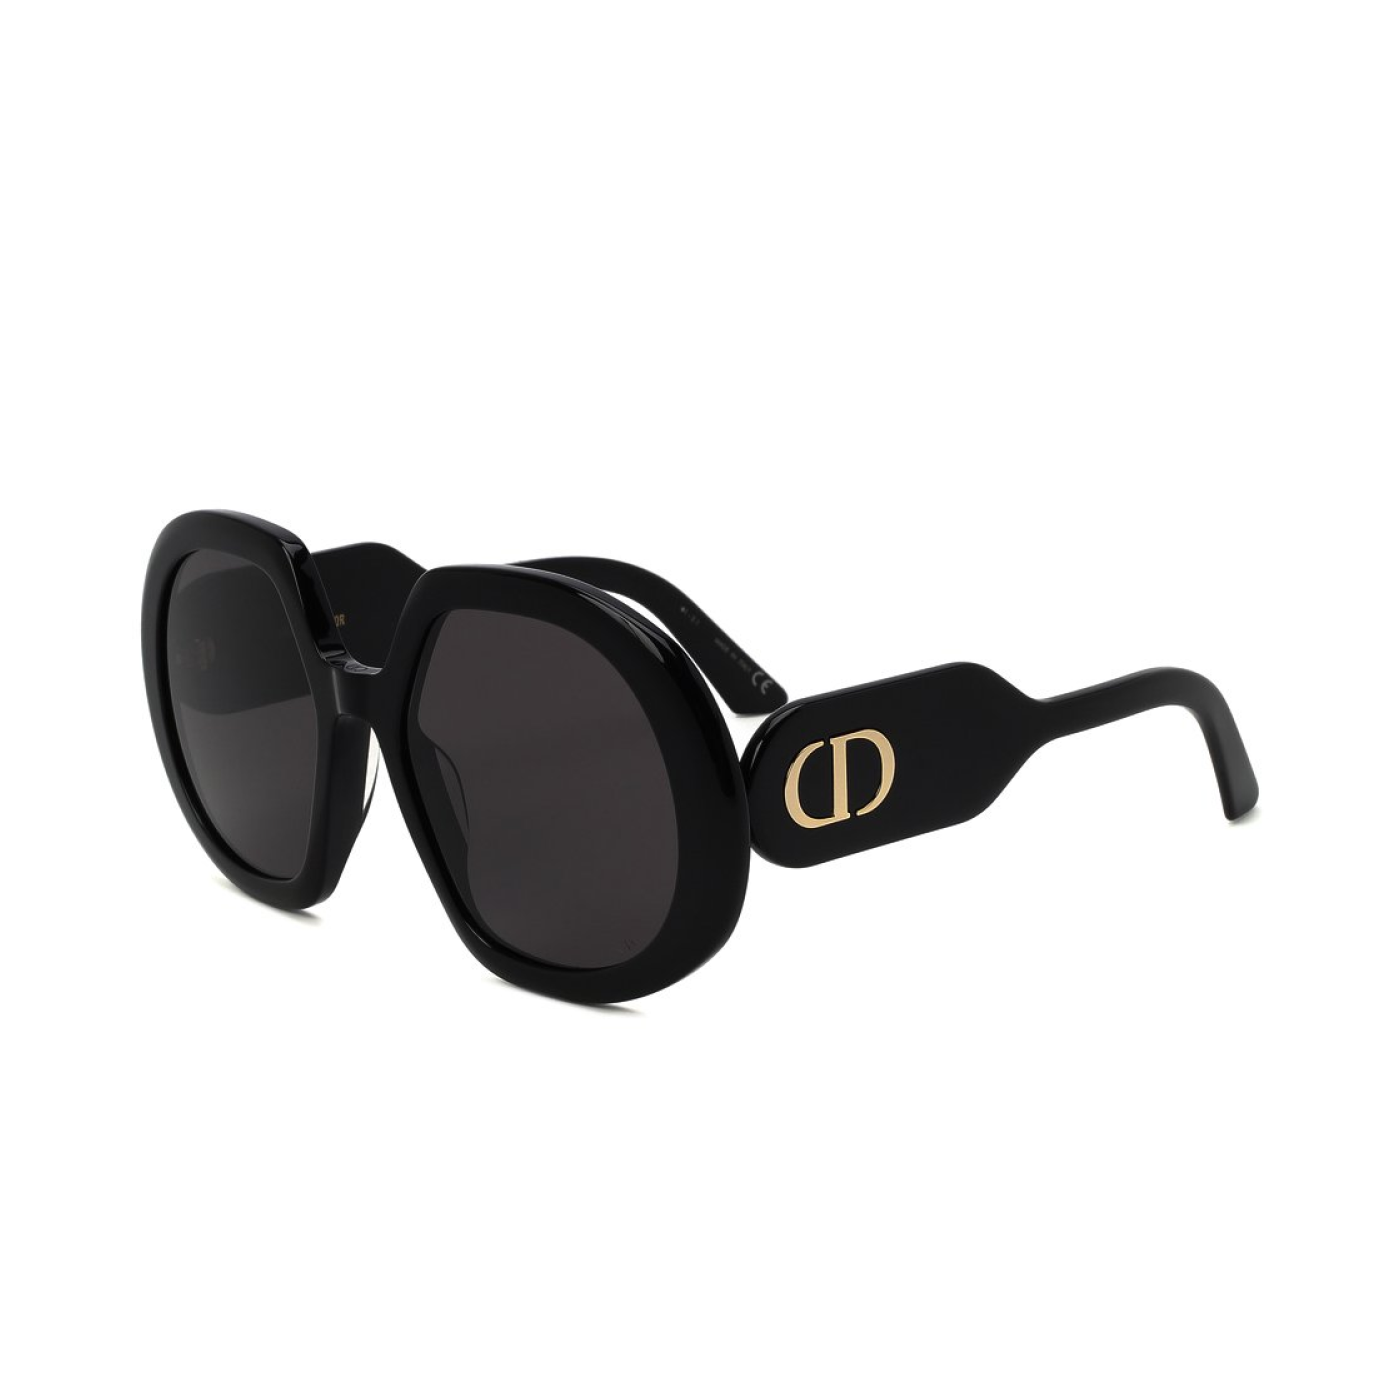 Солнцезащитные очки Dior DM NEODIOR RU F0I0 56  купить в салонах оптики  Счастливый взгляд